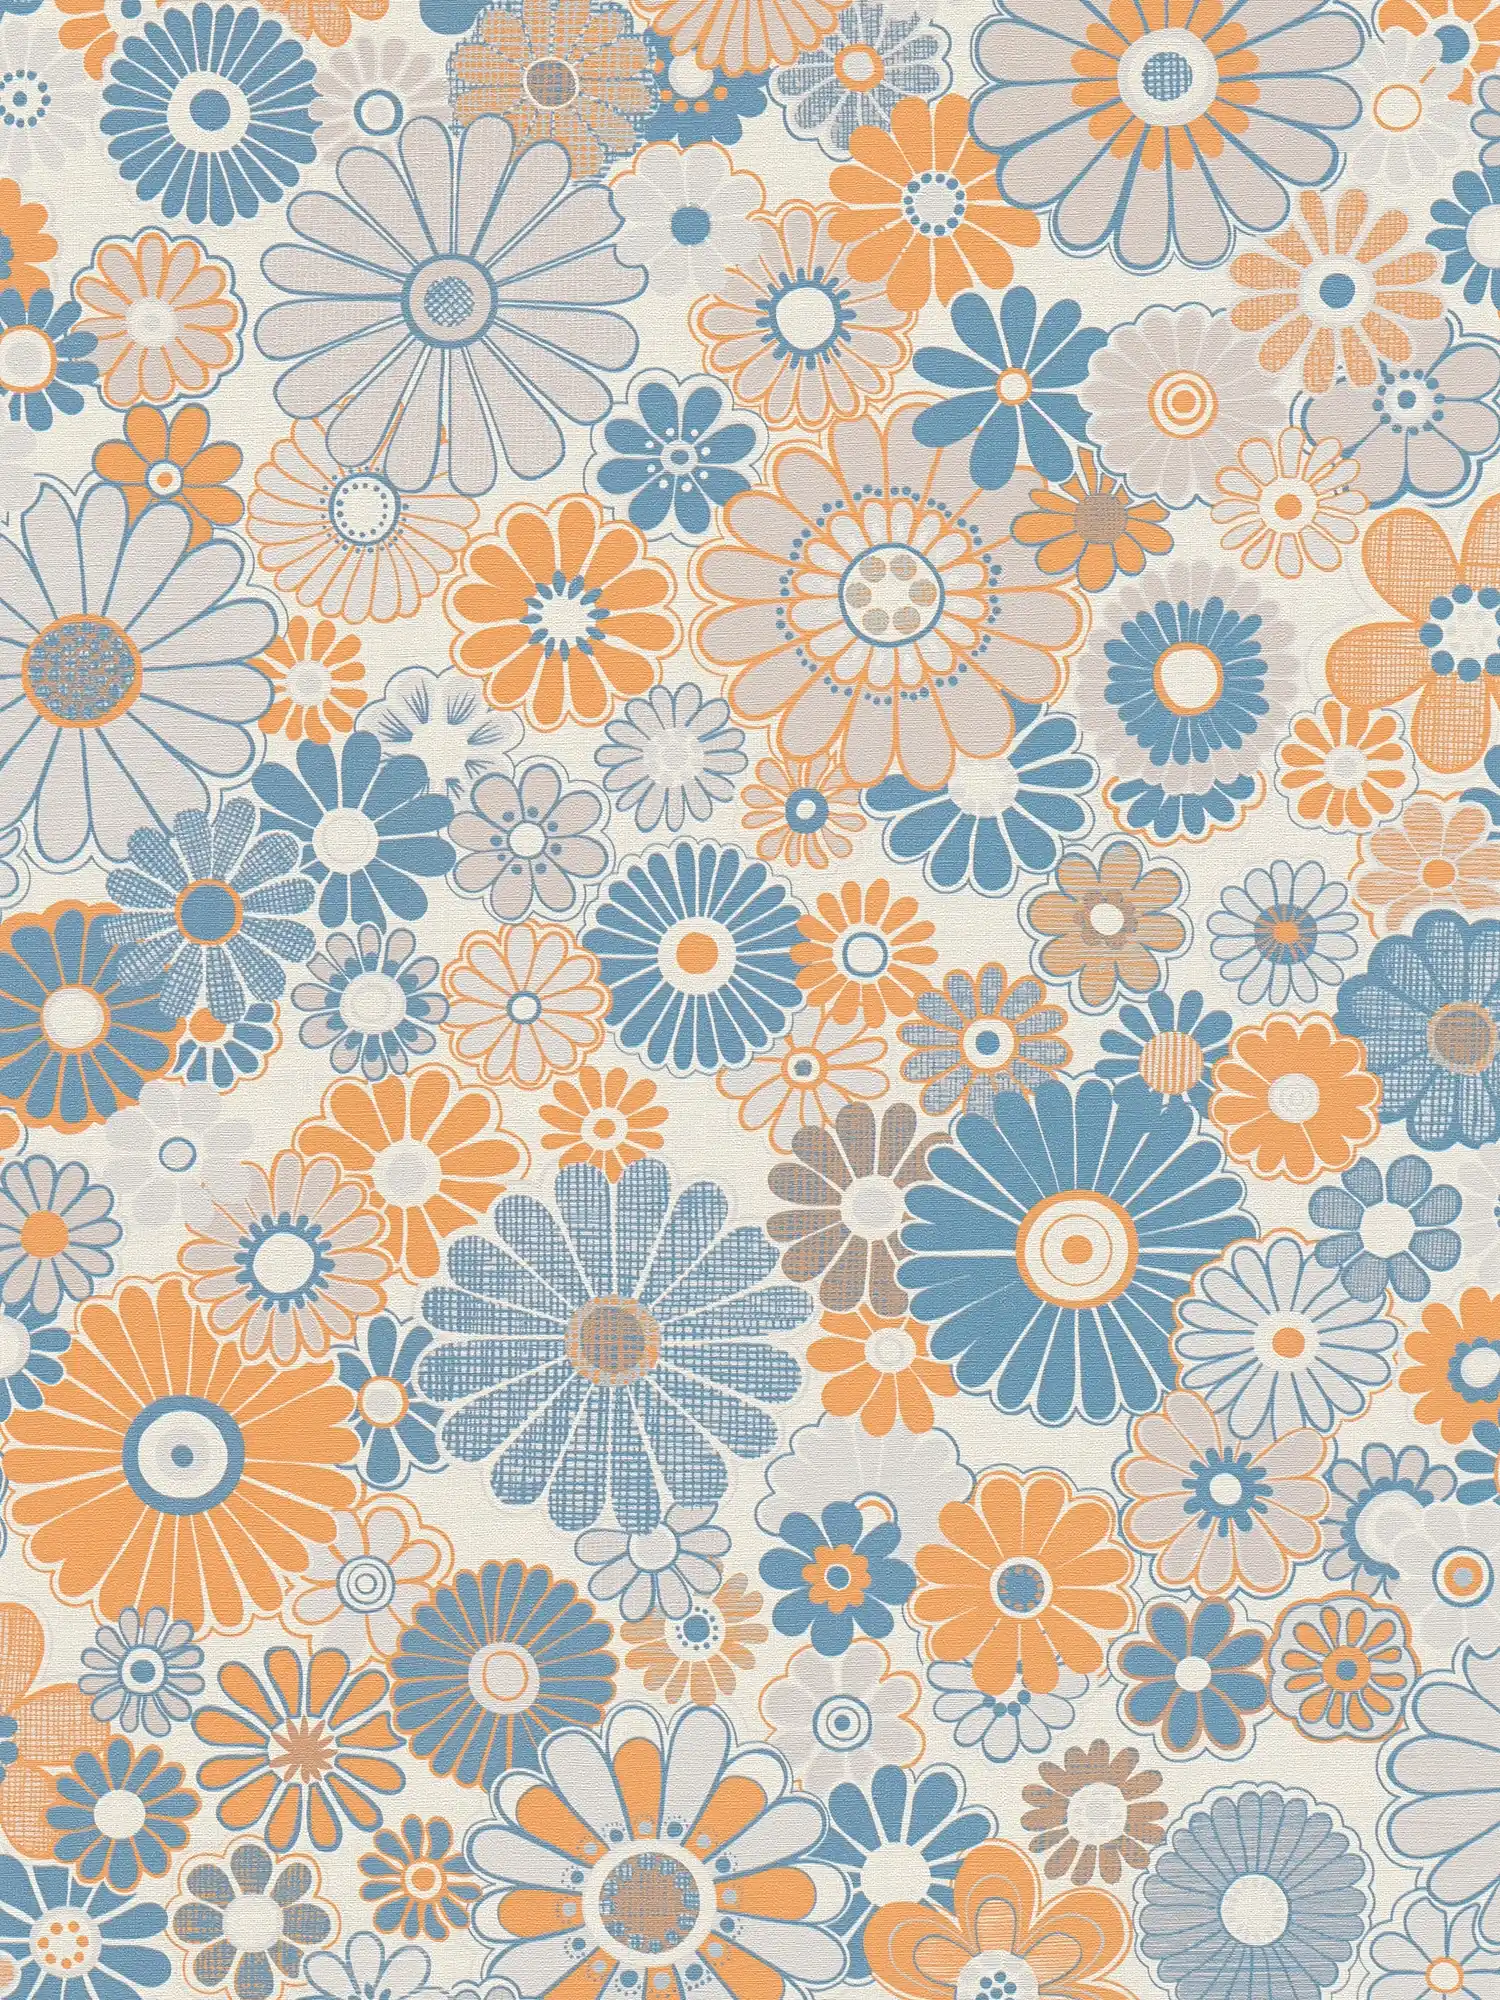 Papel pintado no tejido con motivos florales en estilo retro - azul, naranja, gris
